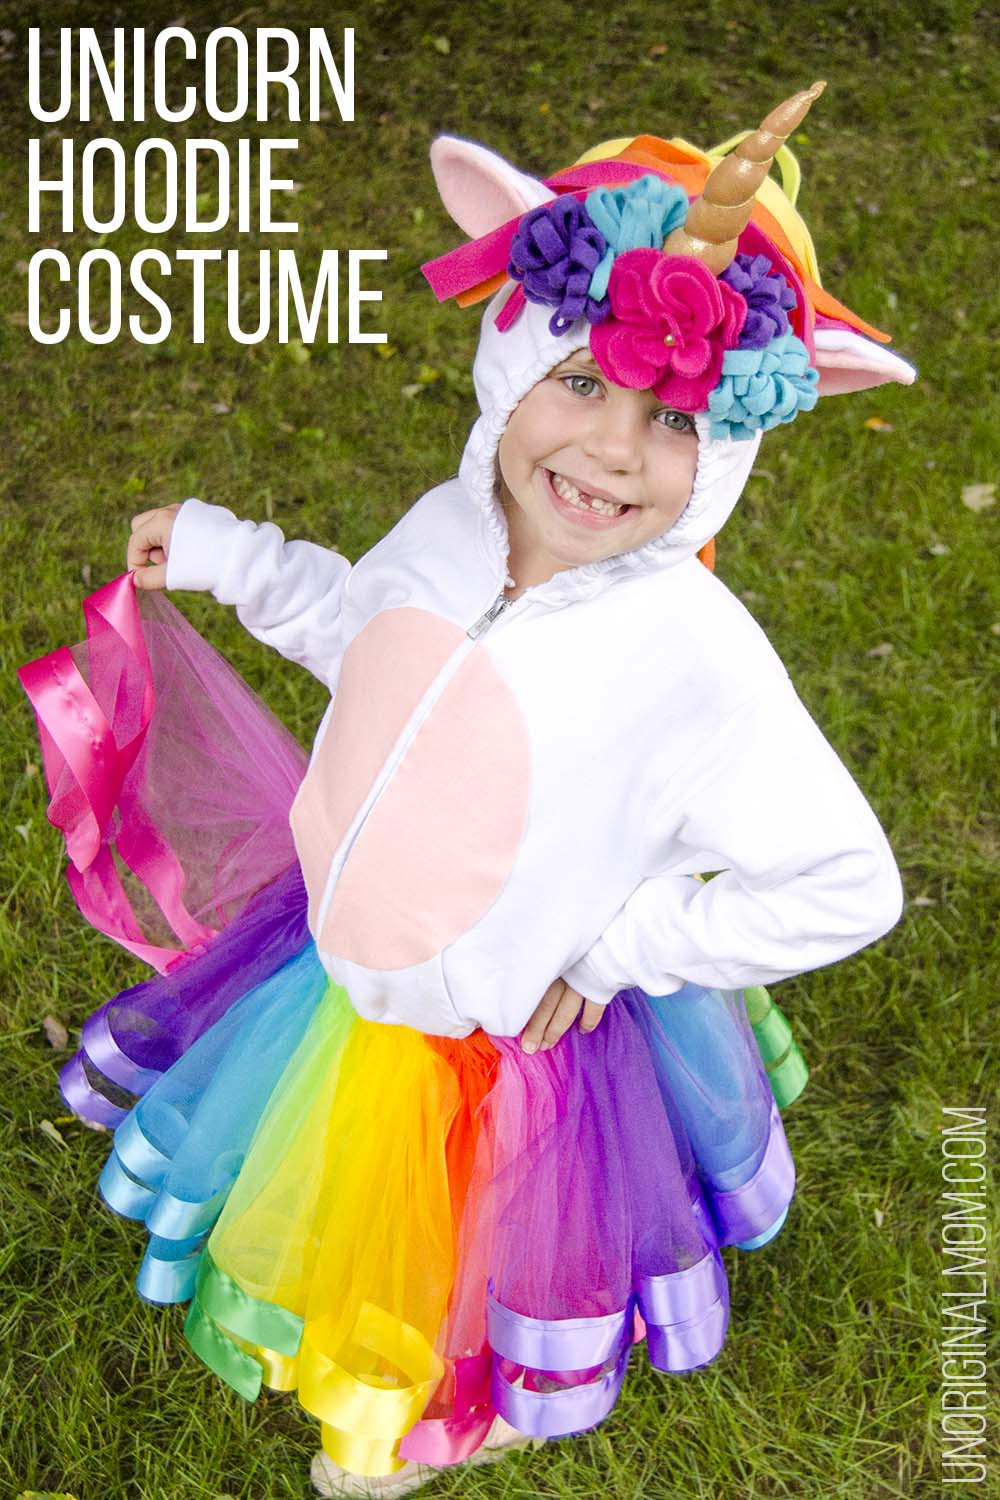 Rainbow Costume DIY
 DIY Unicorn Hoo Costume with Rainbow Tutu Tutorial